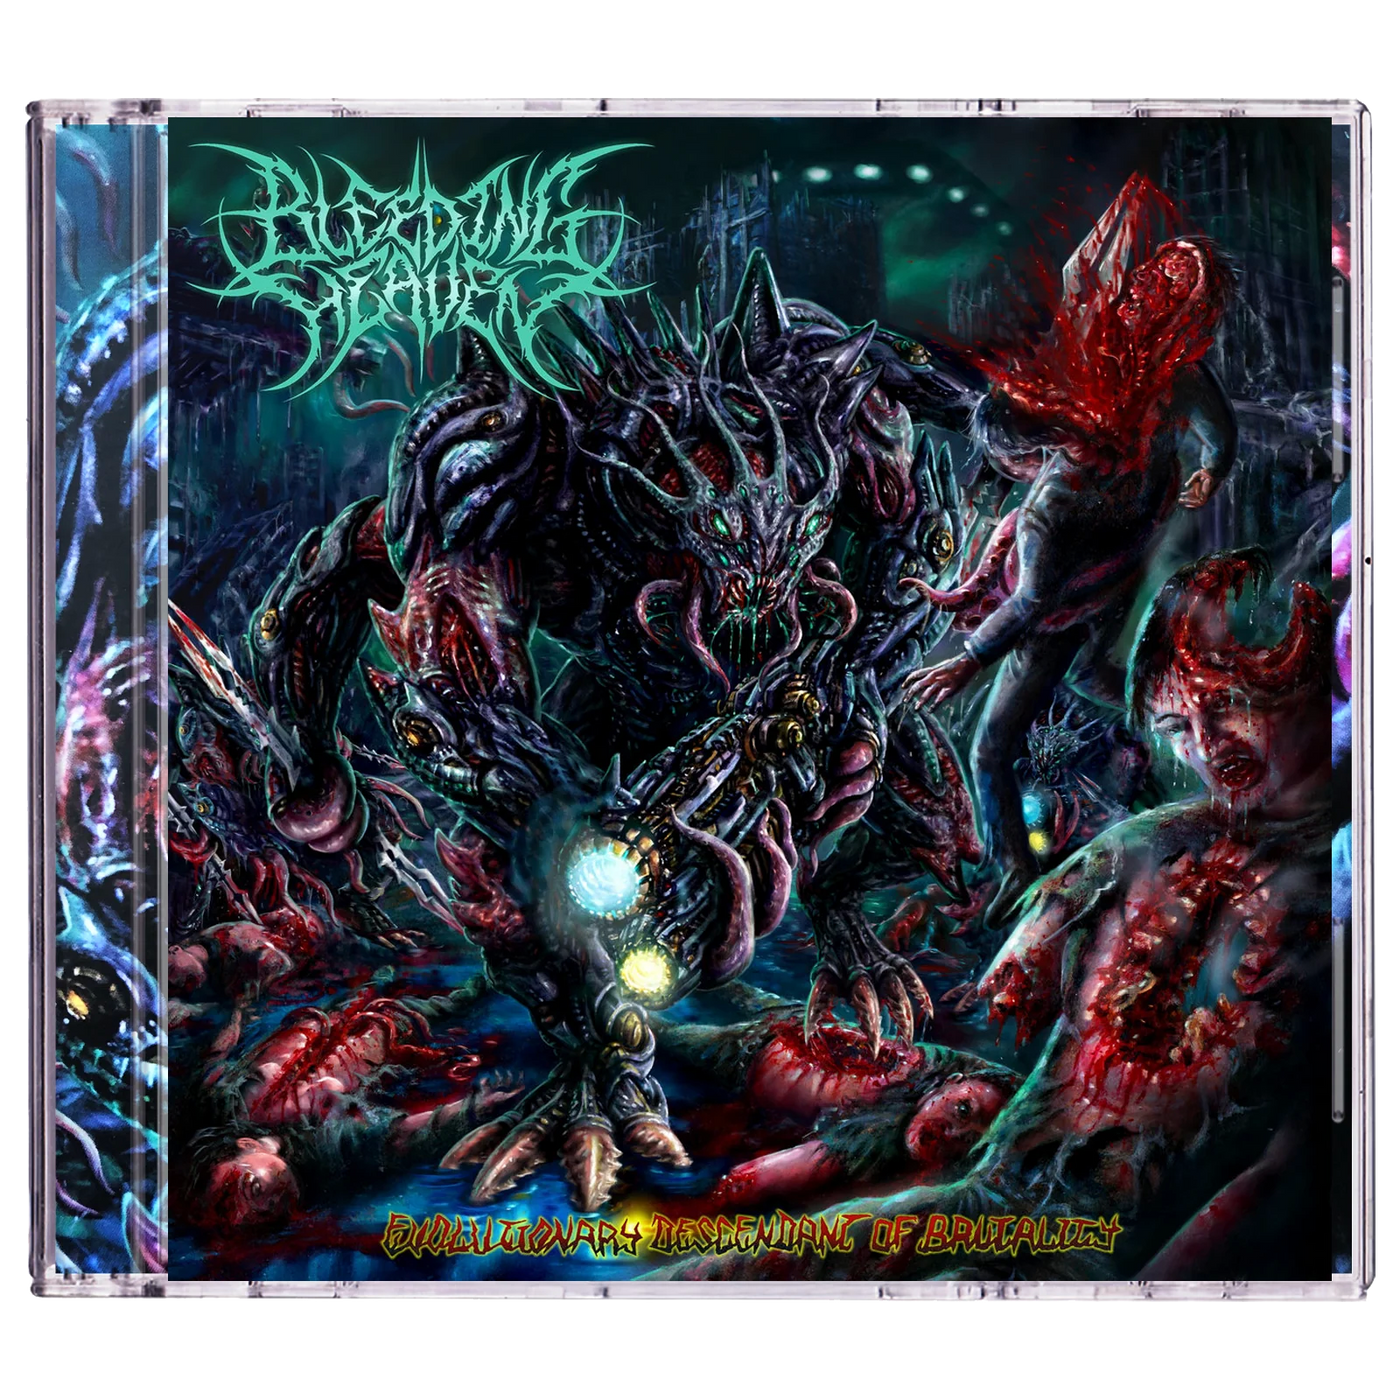 Bleeding Heaven 'Evolutionary Descendant of Brutality' CD